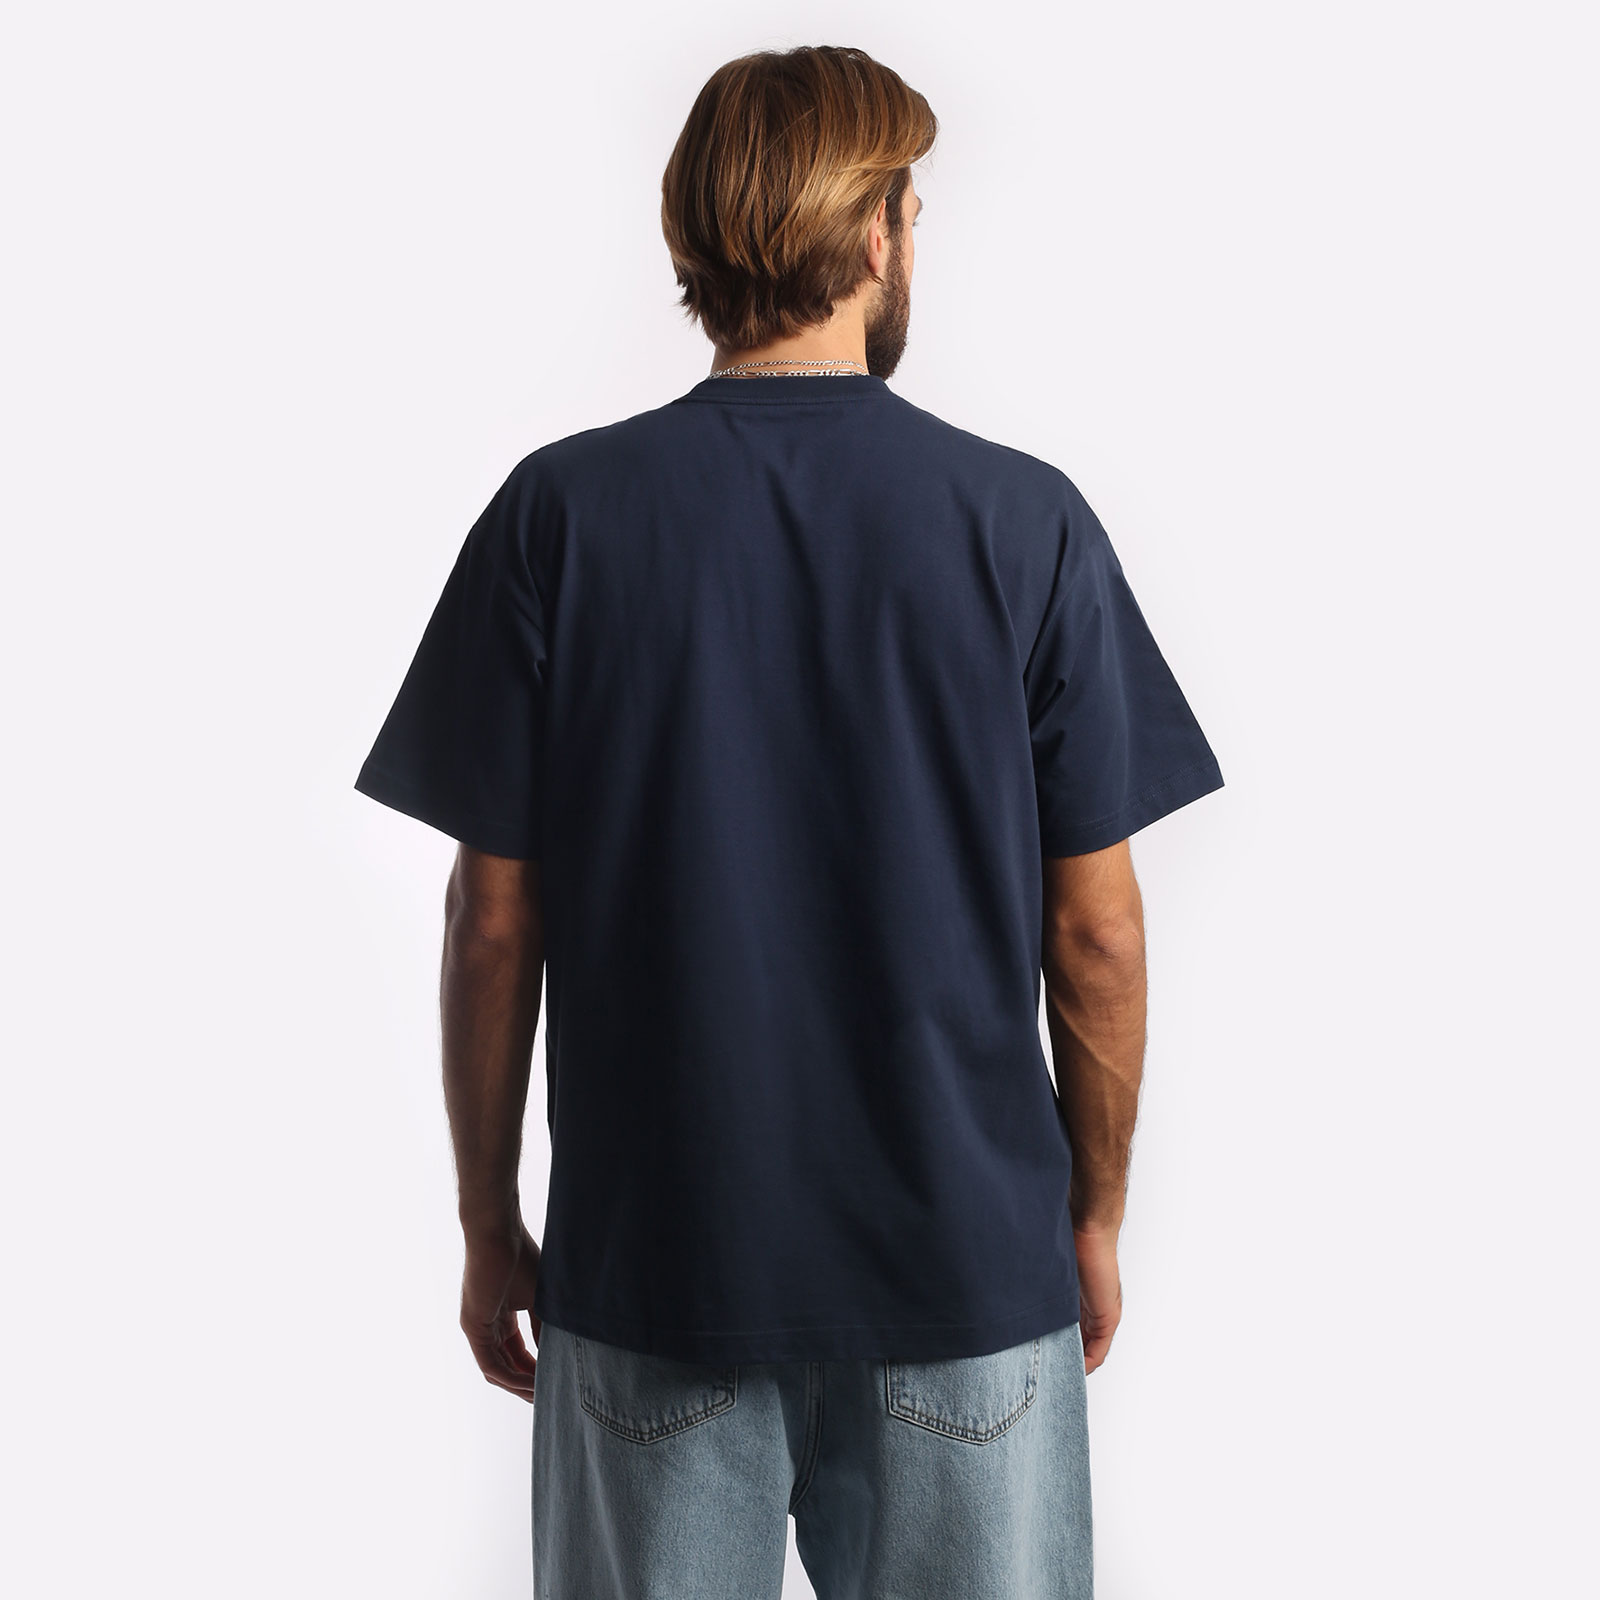 мужская футболка Carhartt WIP S/S I Heart Progress T-Shirt  (I032378-blue)  - цена, описание, фото 2